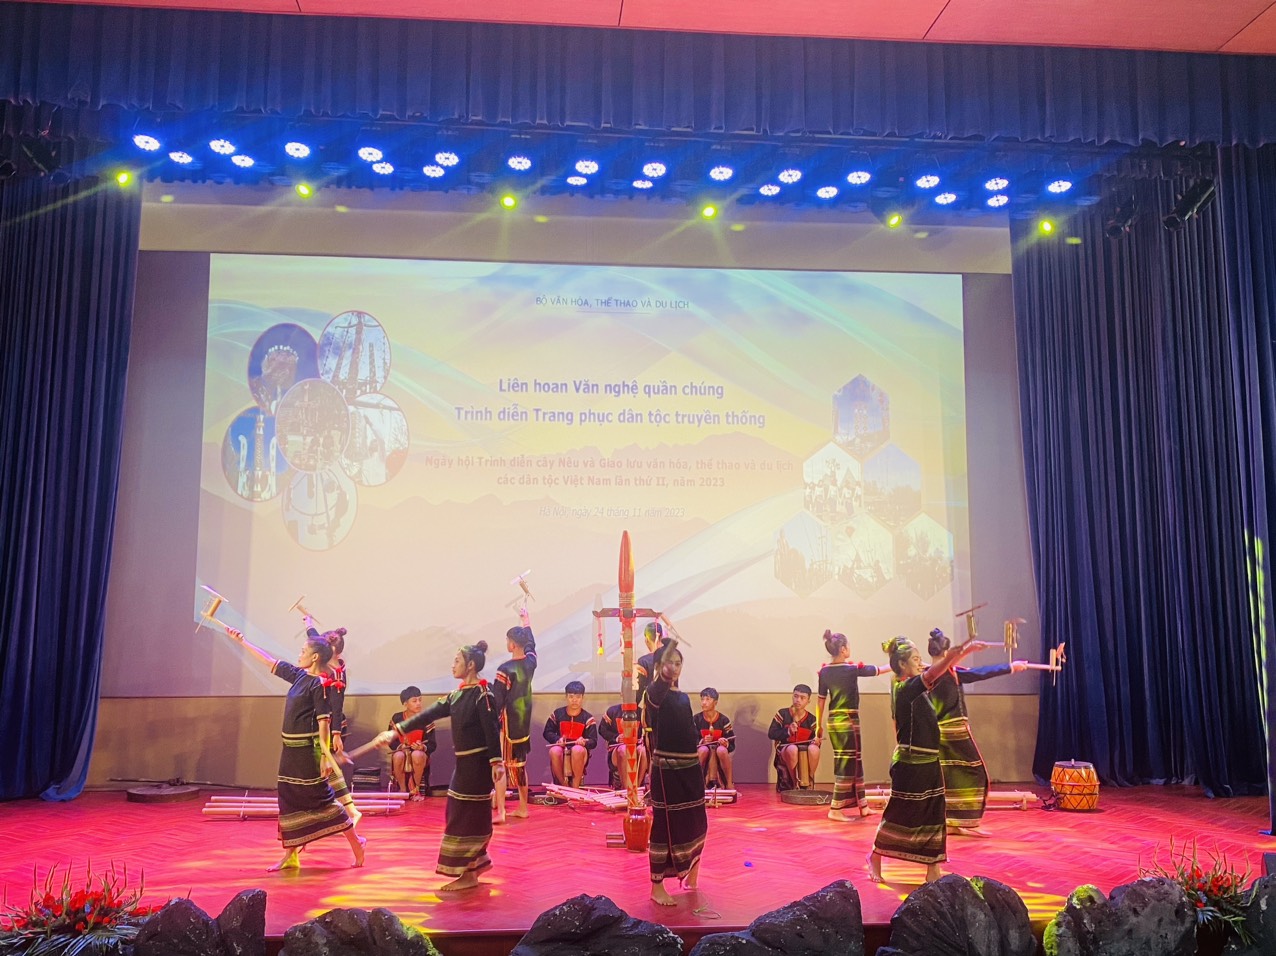 Đoàn nghệ nhân tỉnh Đắk Lắk tham gia liên hoan văn nghệ quần chúng